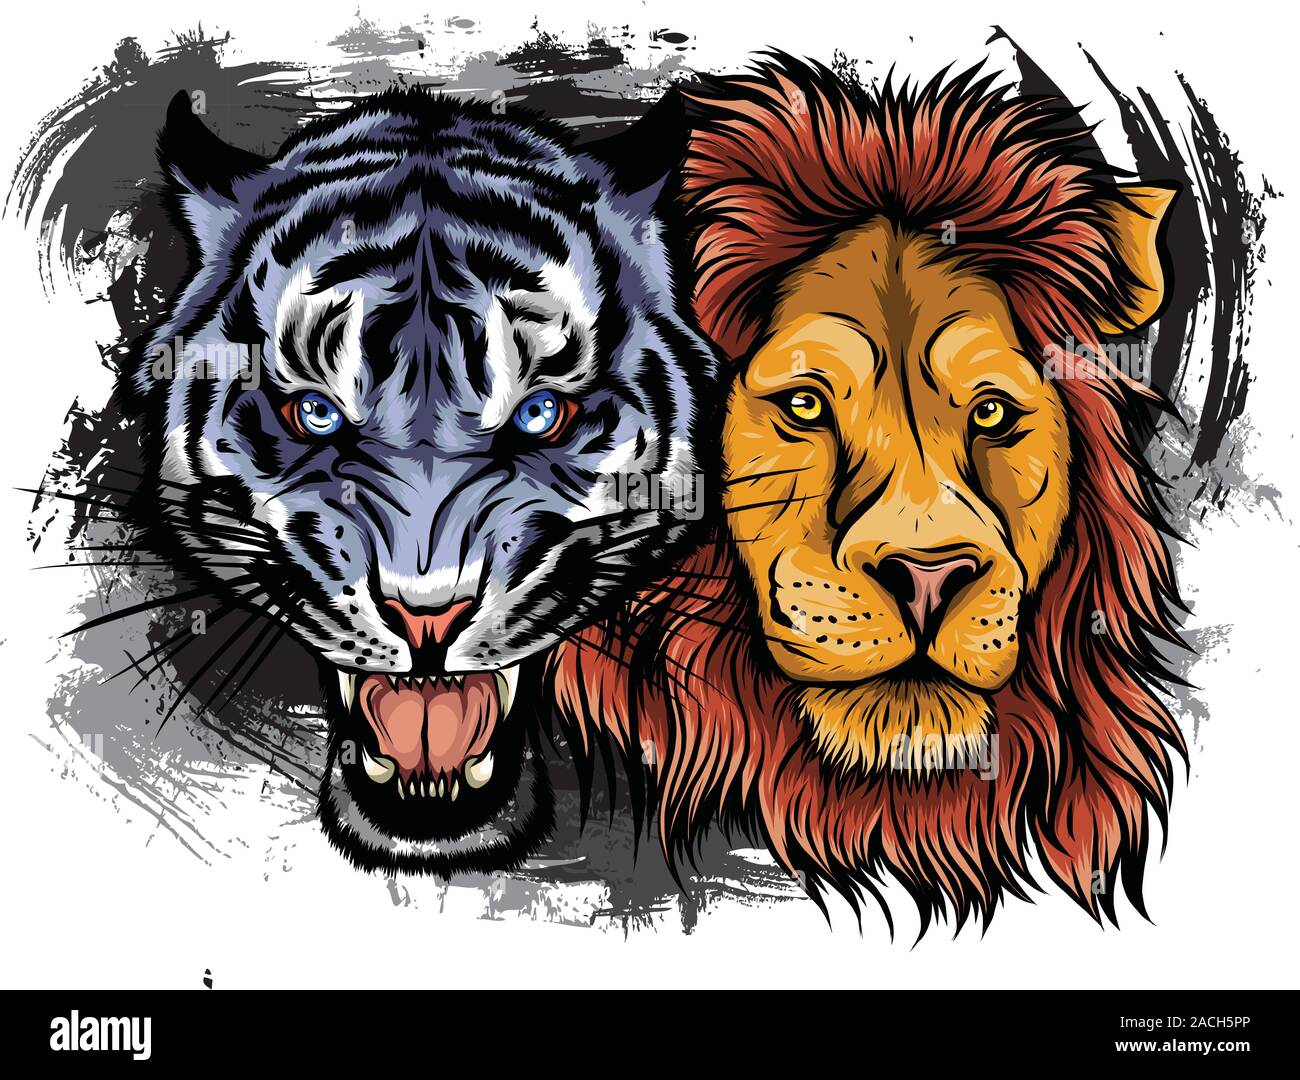 Löwen und Tiger Knurren einander gegenüber, öffnen Sie einen verbitterten Mund, Eckzähne, Hand gezeichnet Doodle, Skizze im Pop Art Stil, Vektor, Abbildung Stock Vektor